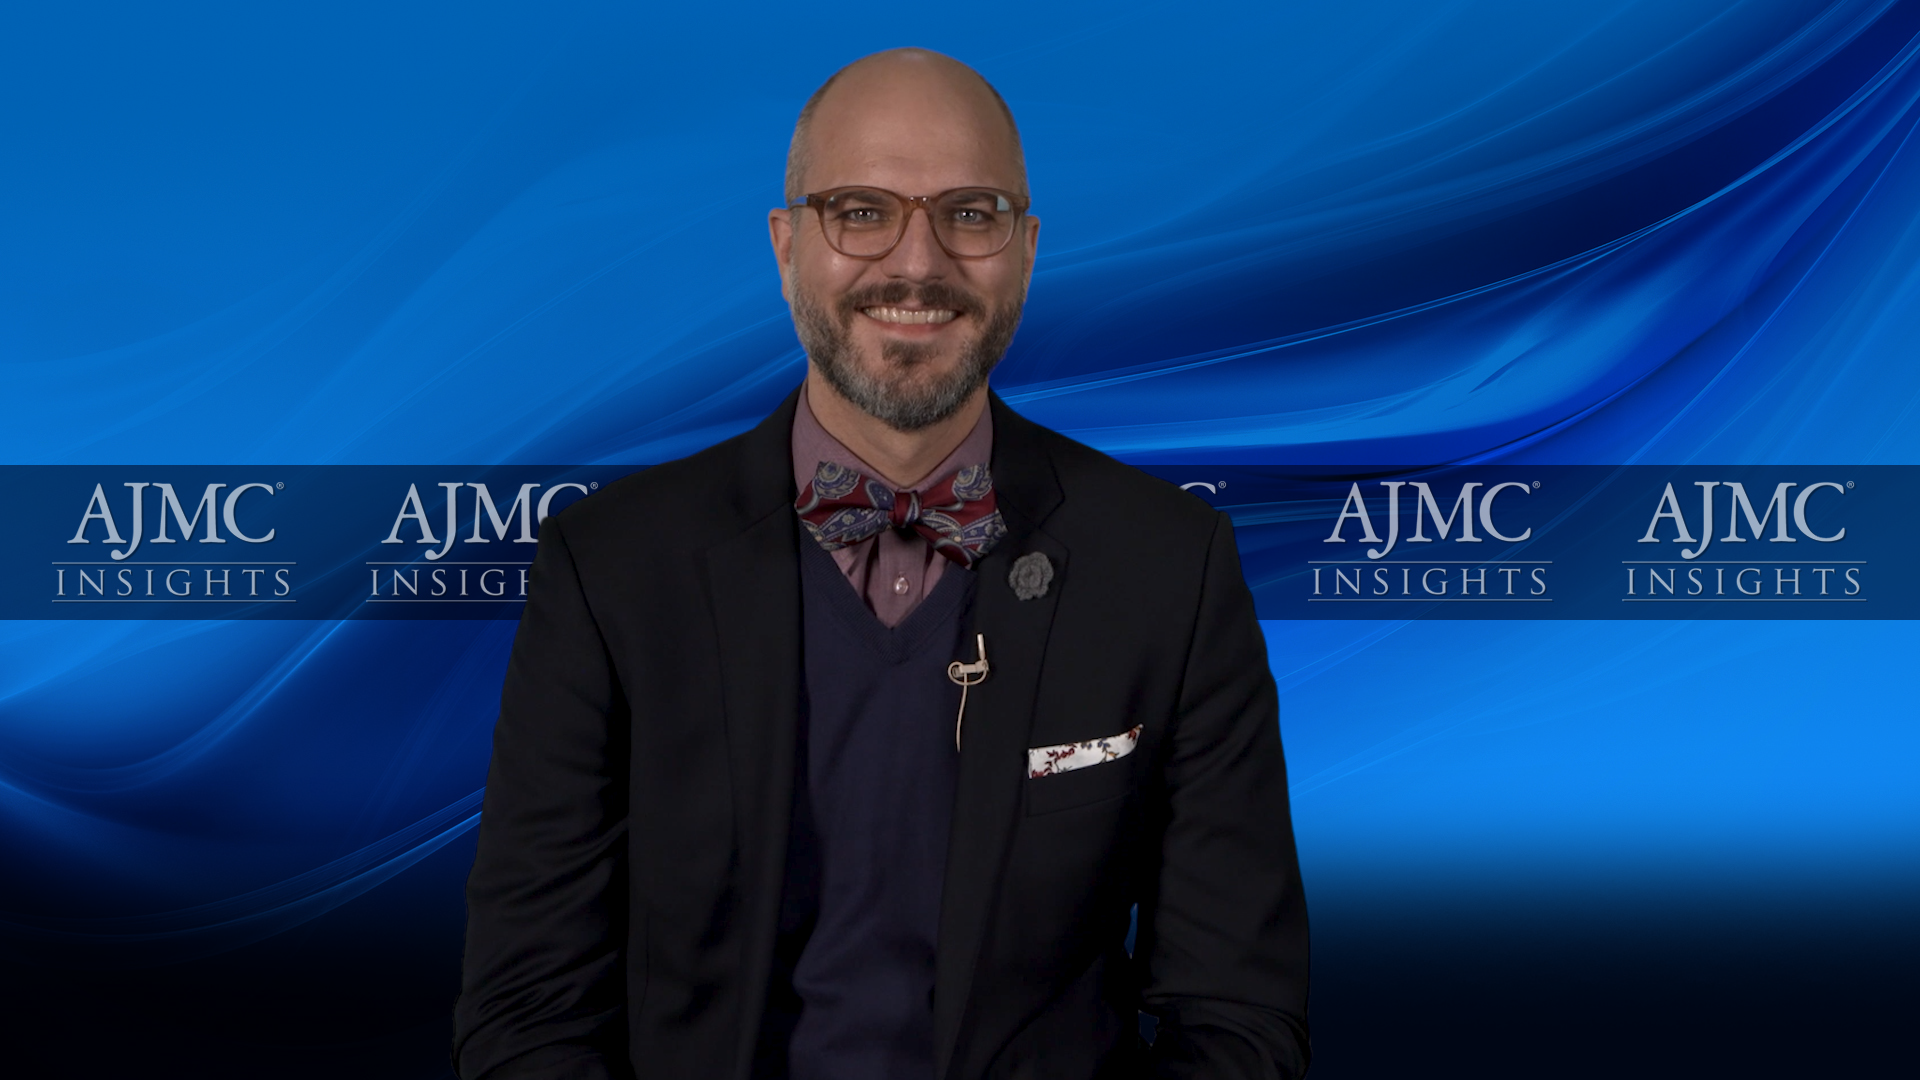 AJMC Provides Myelofibrosis Guideline Updates